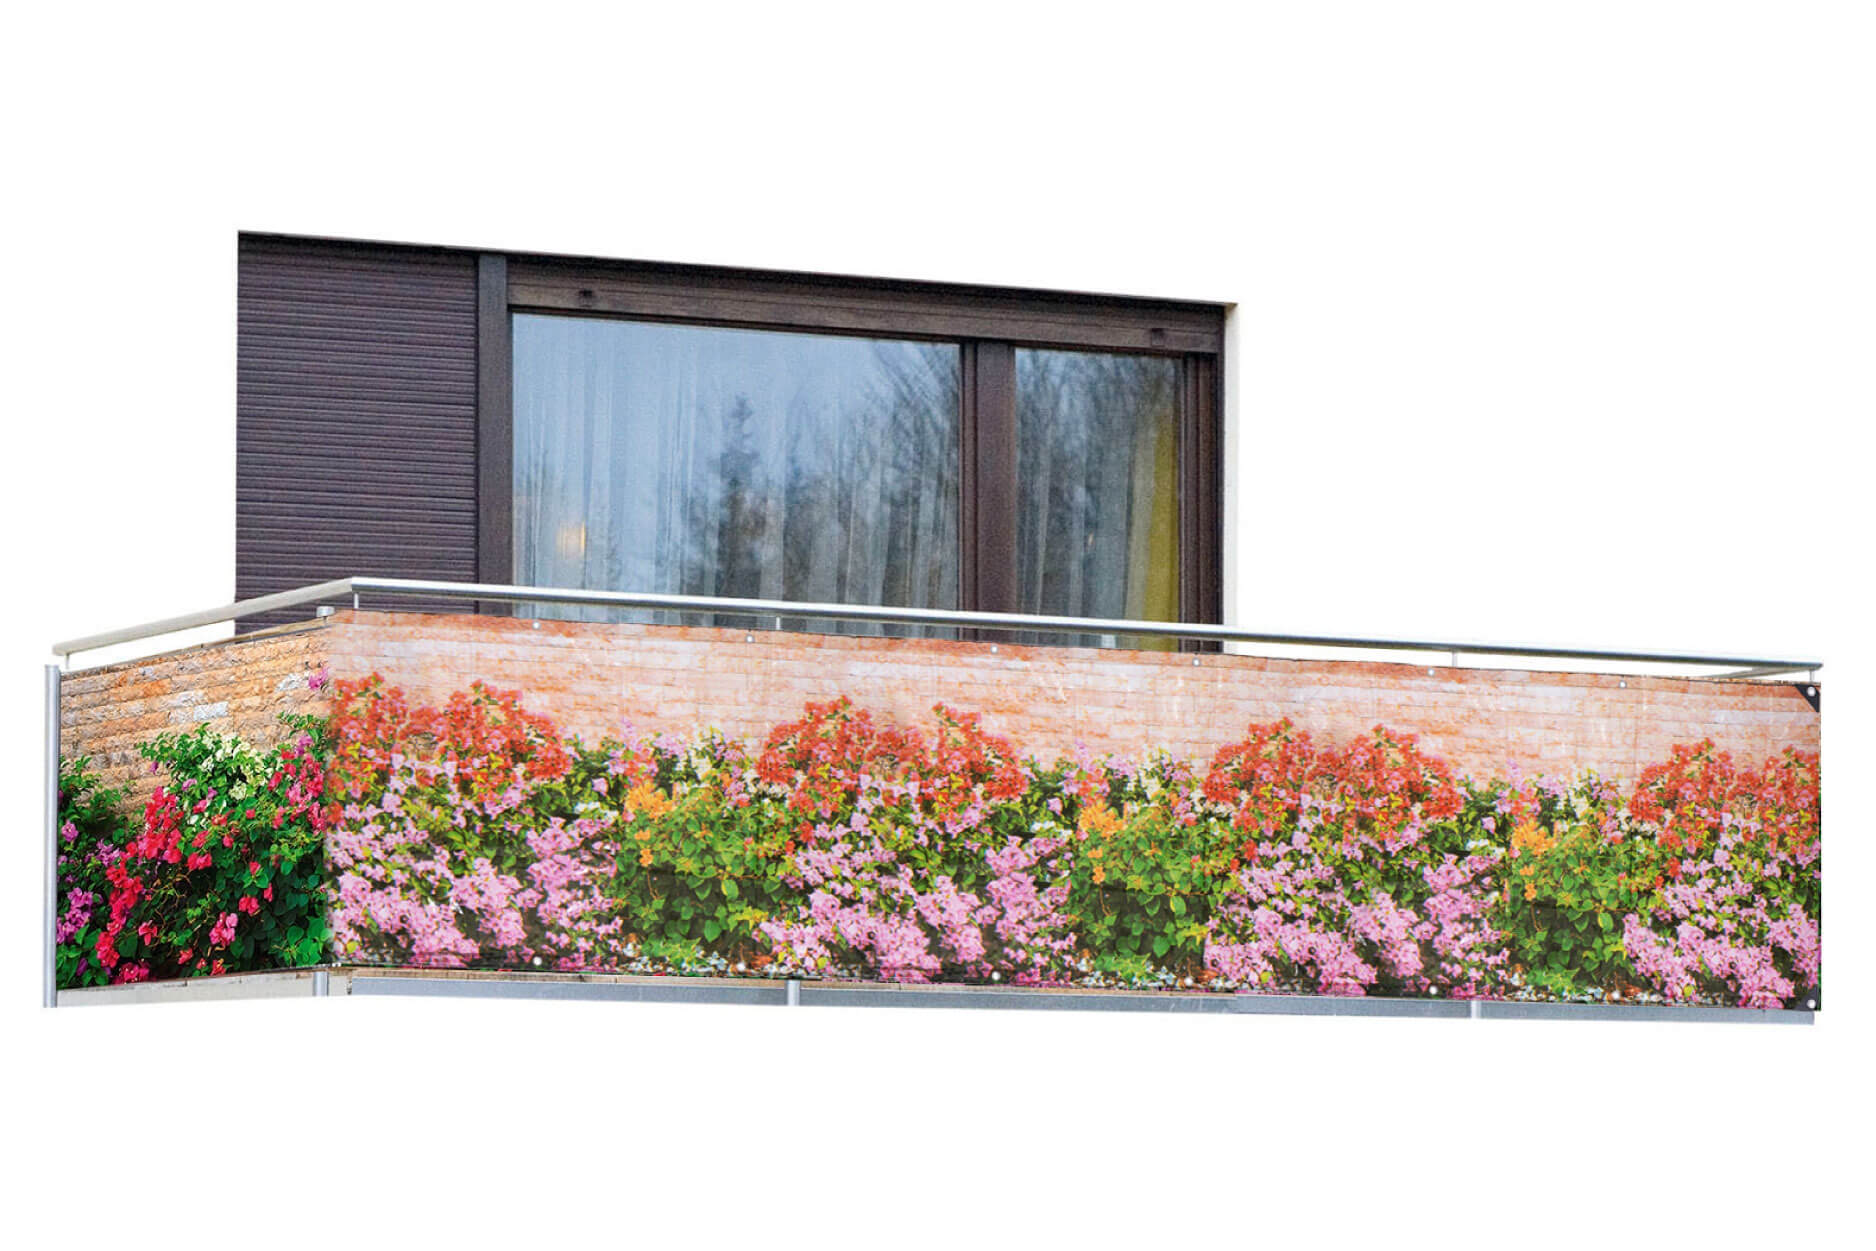 Balkon-Sichtschutz Mauer-Blumen, 5 m